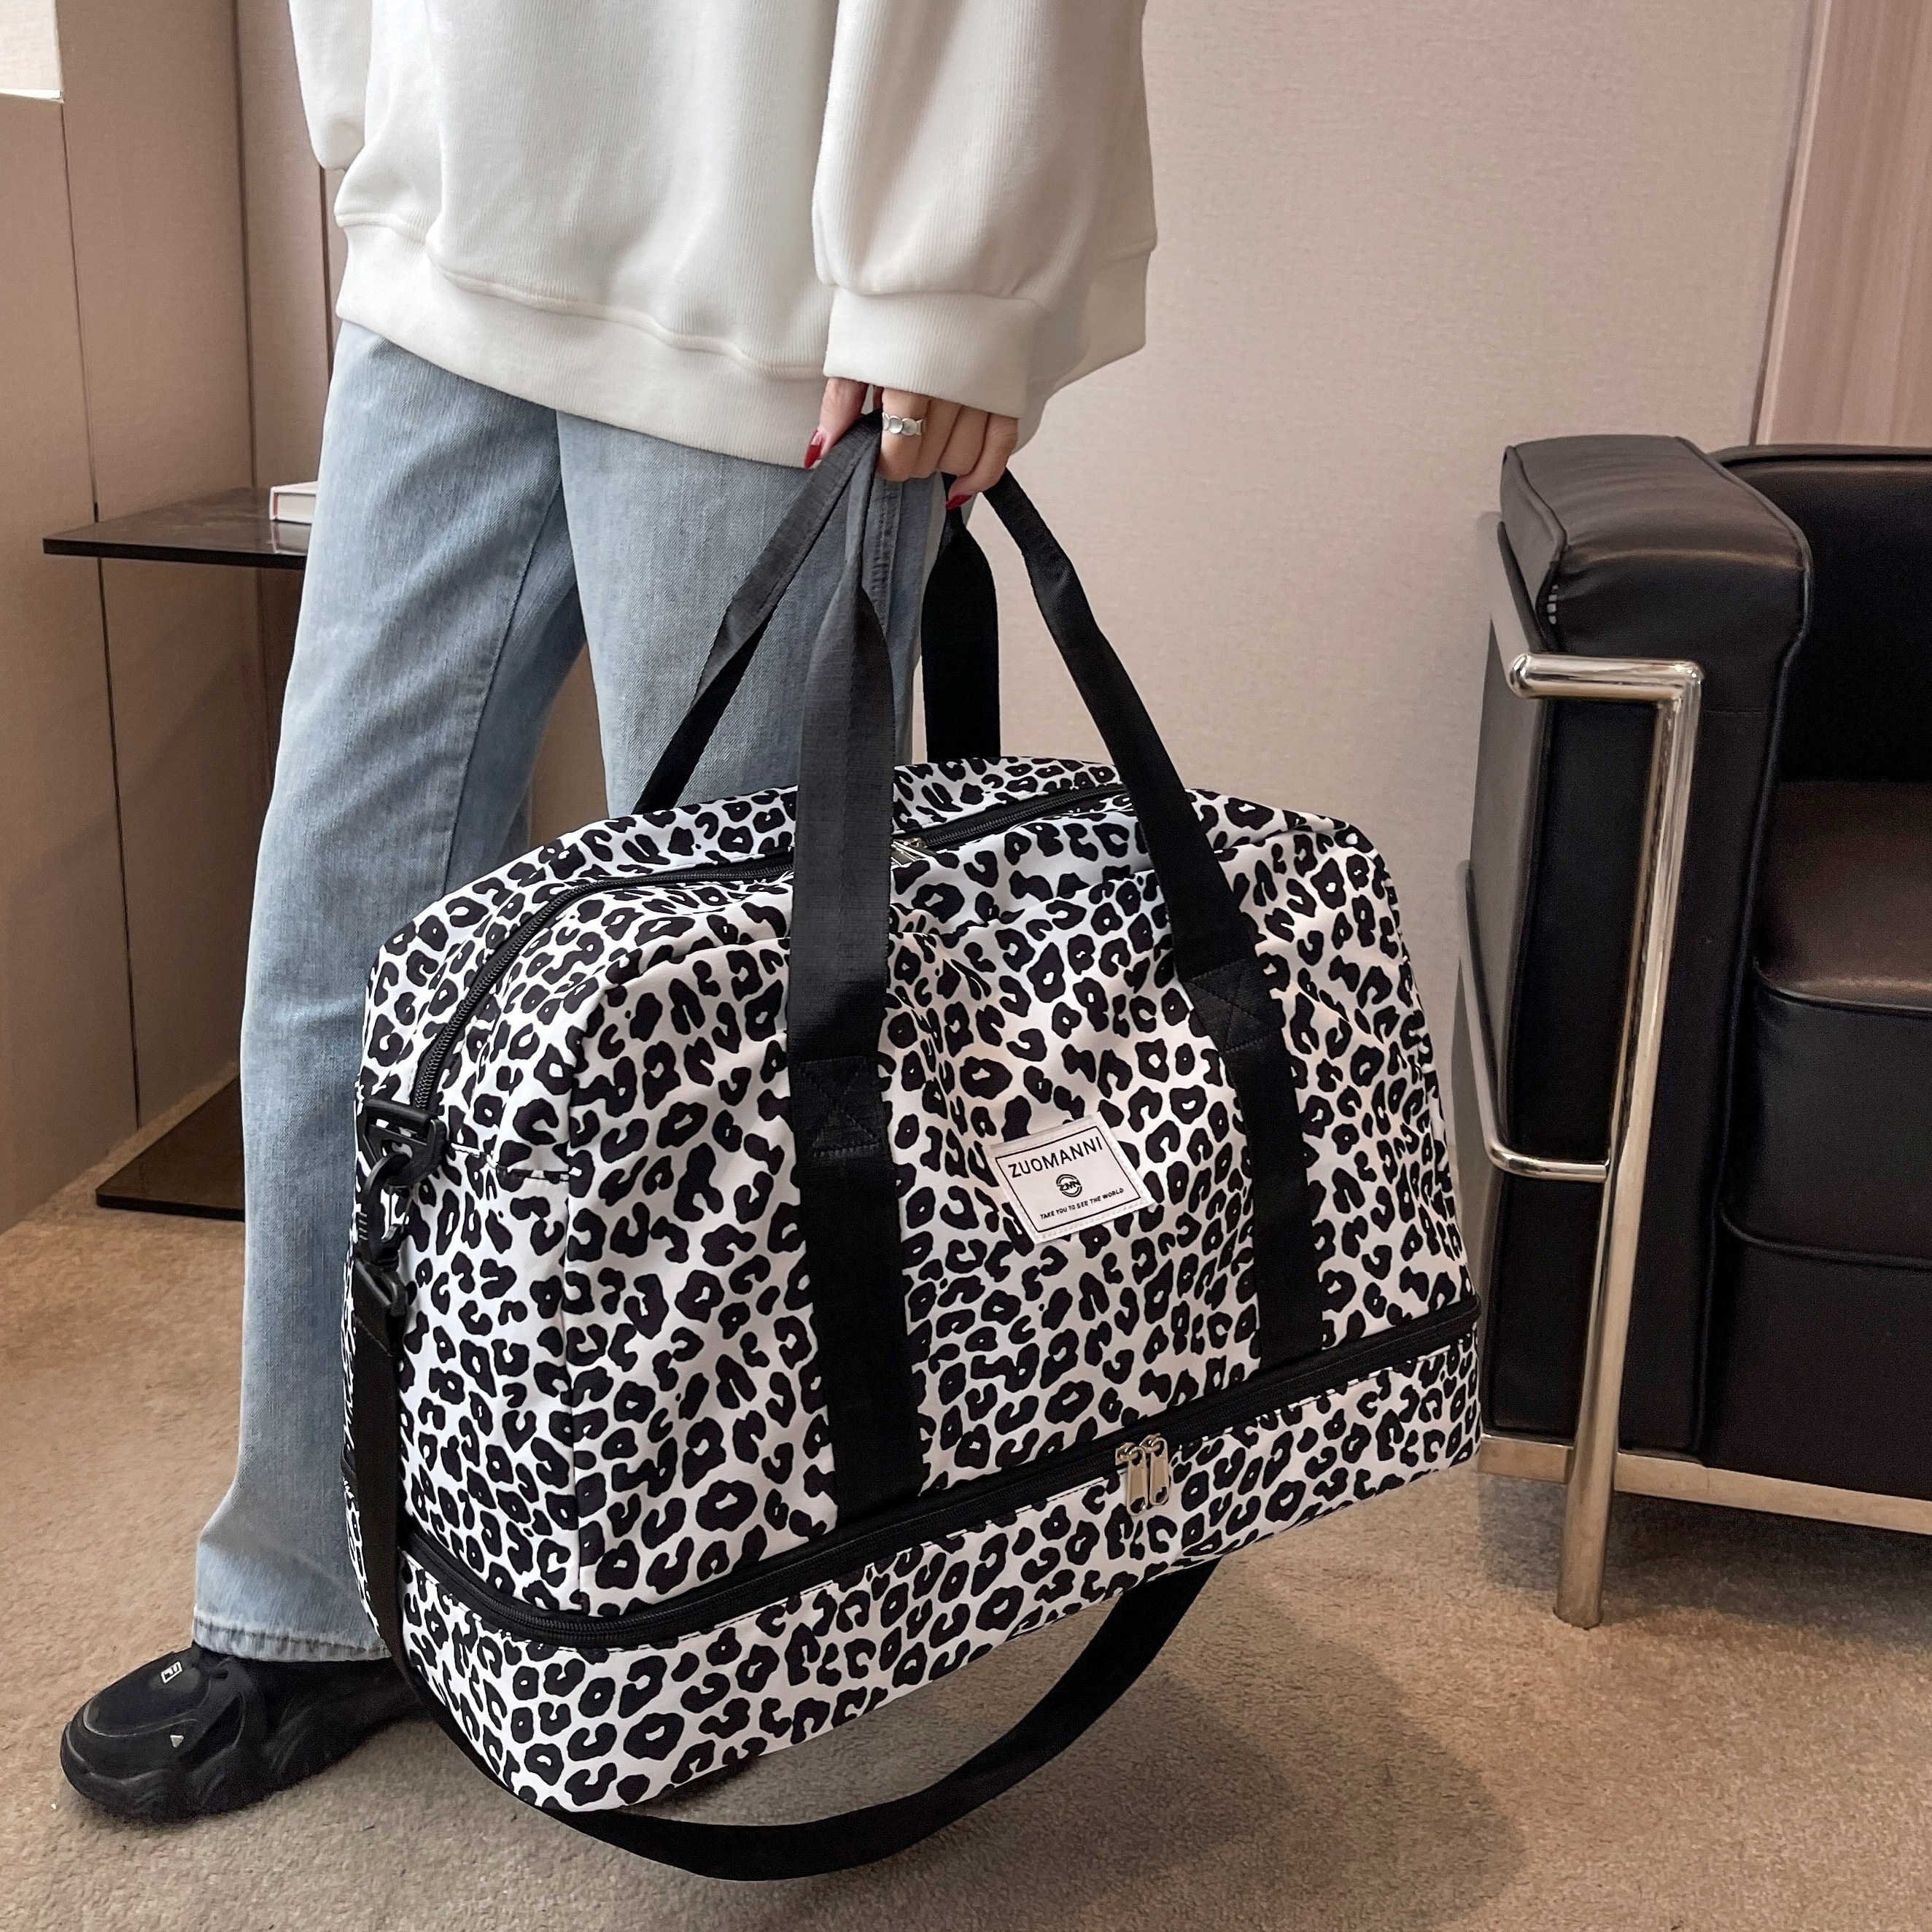 Victoria's Secret Cheetah Print Handbags